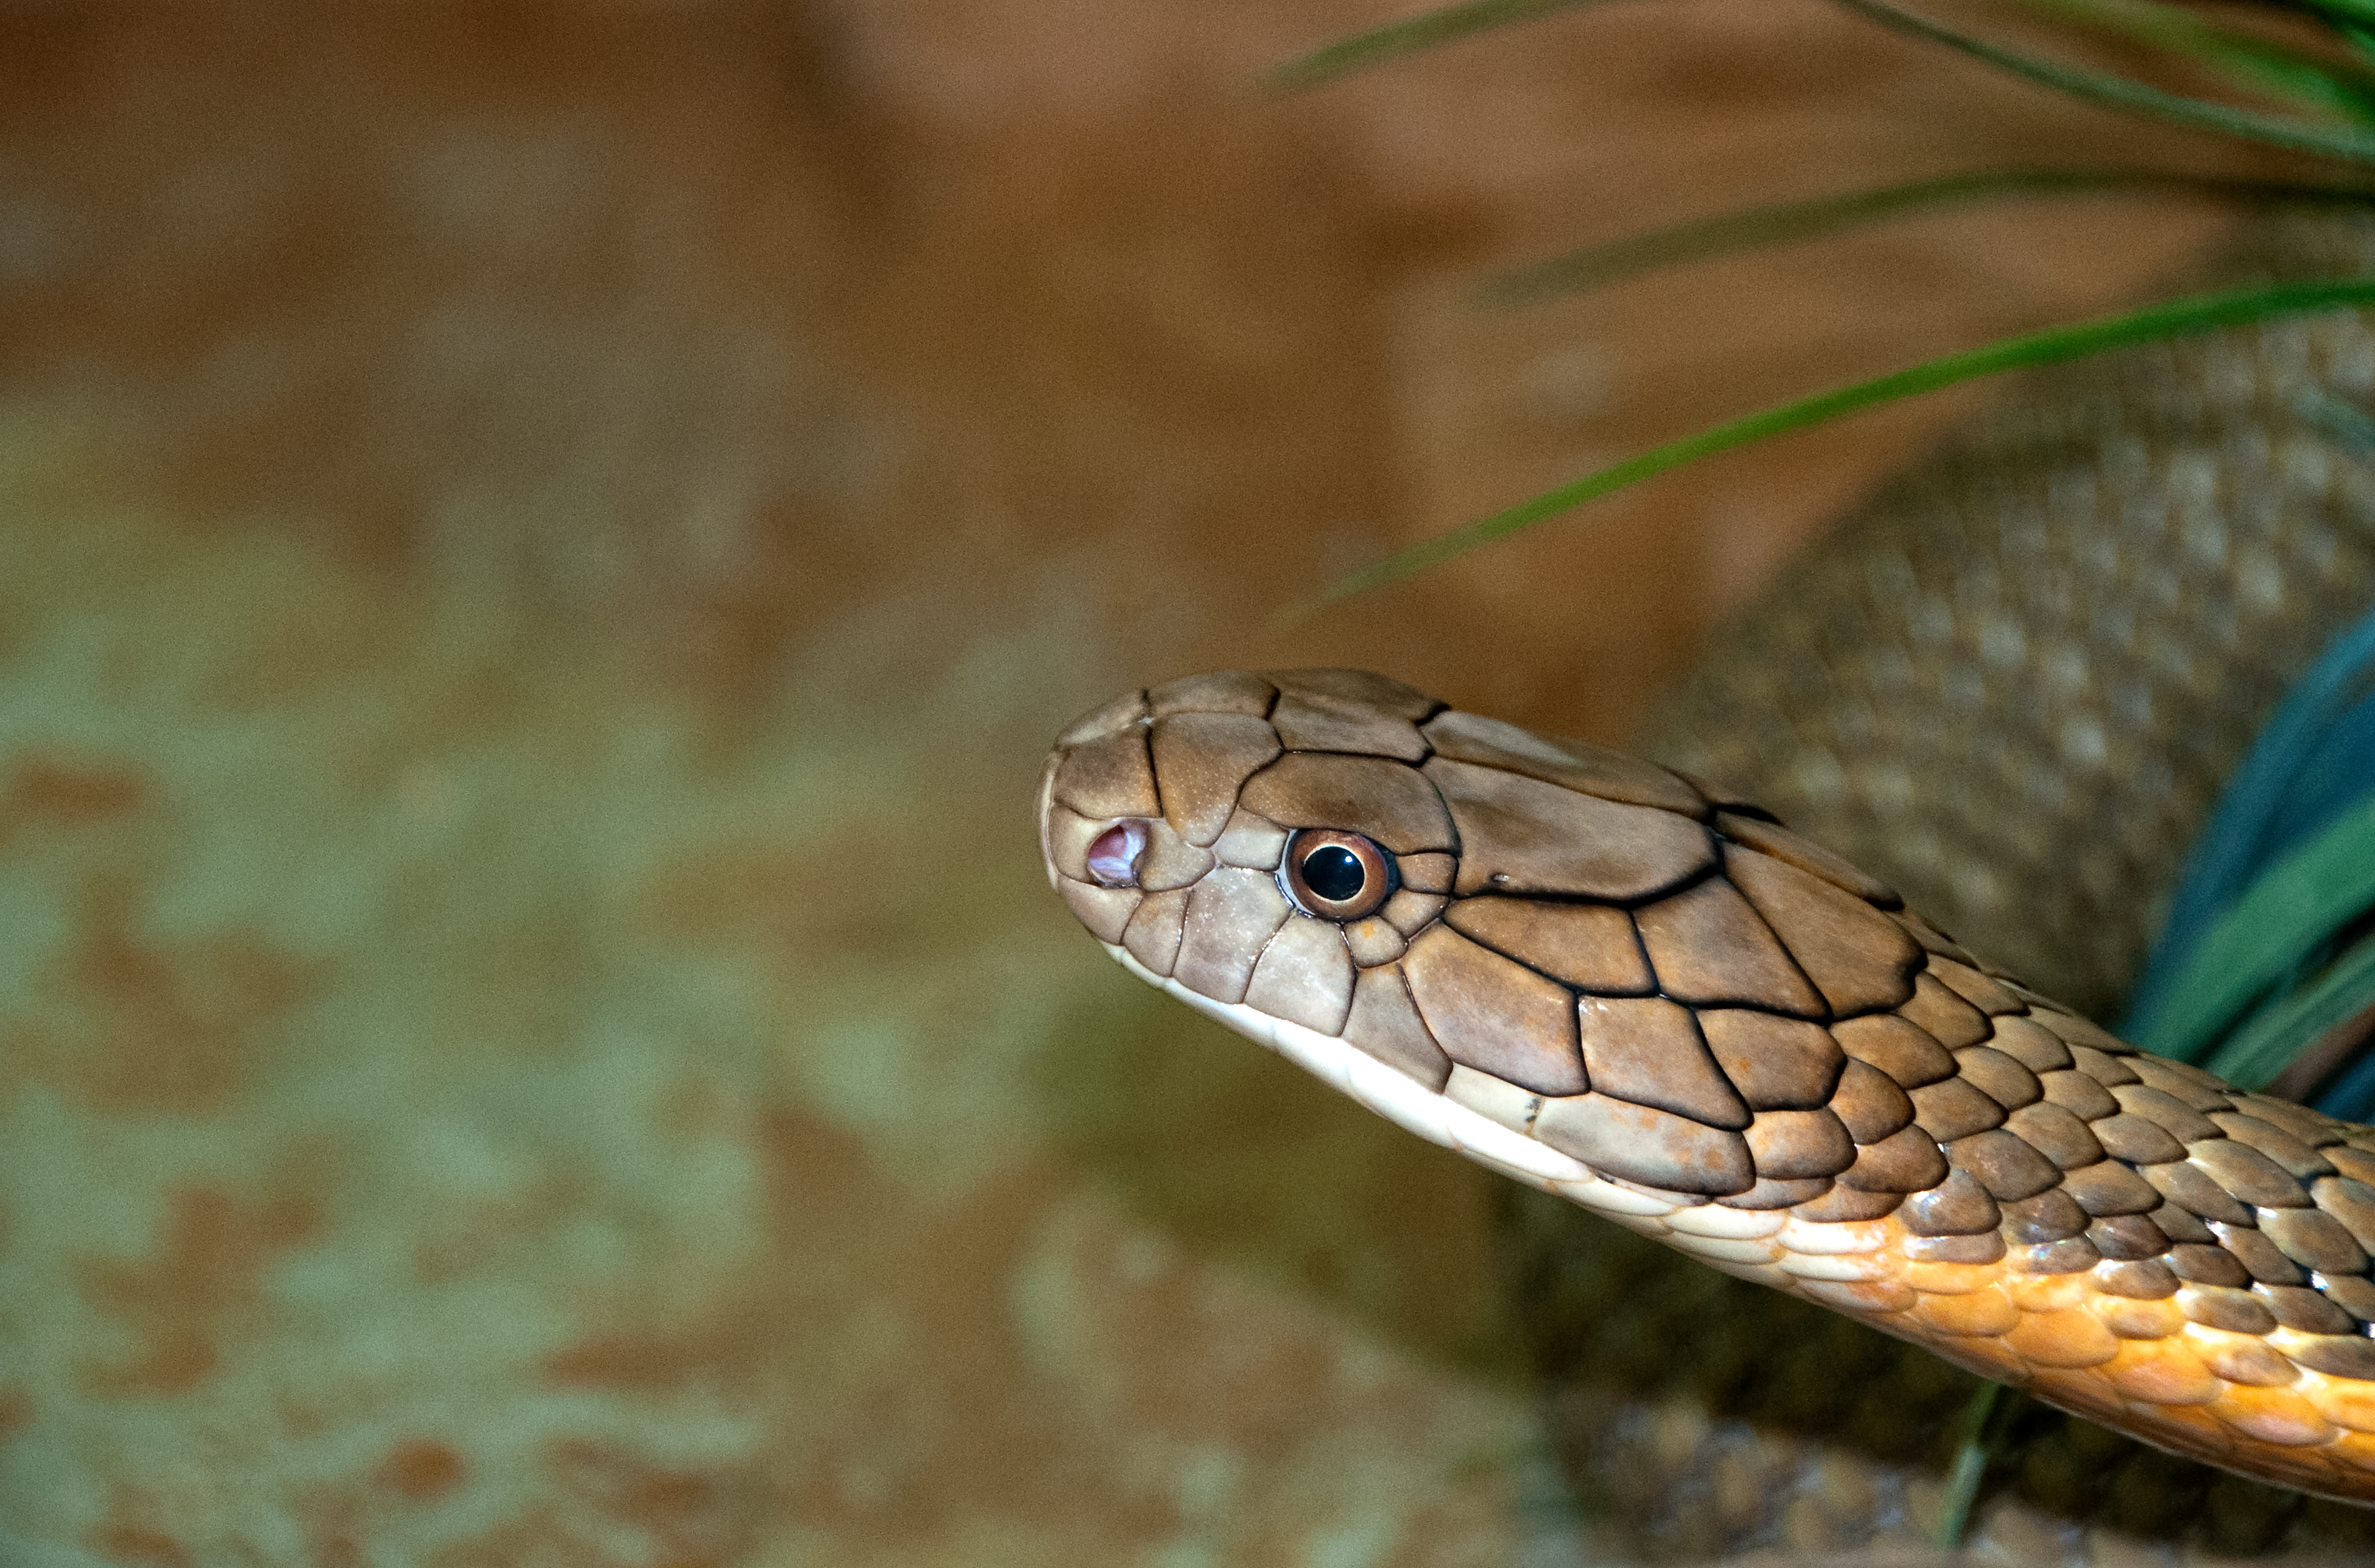 king-cobra-snake-farm-bangkok-photo-4737.jpg